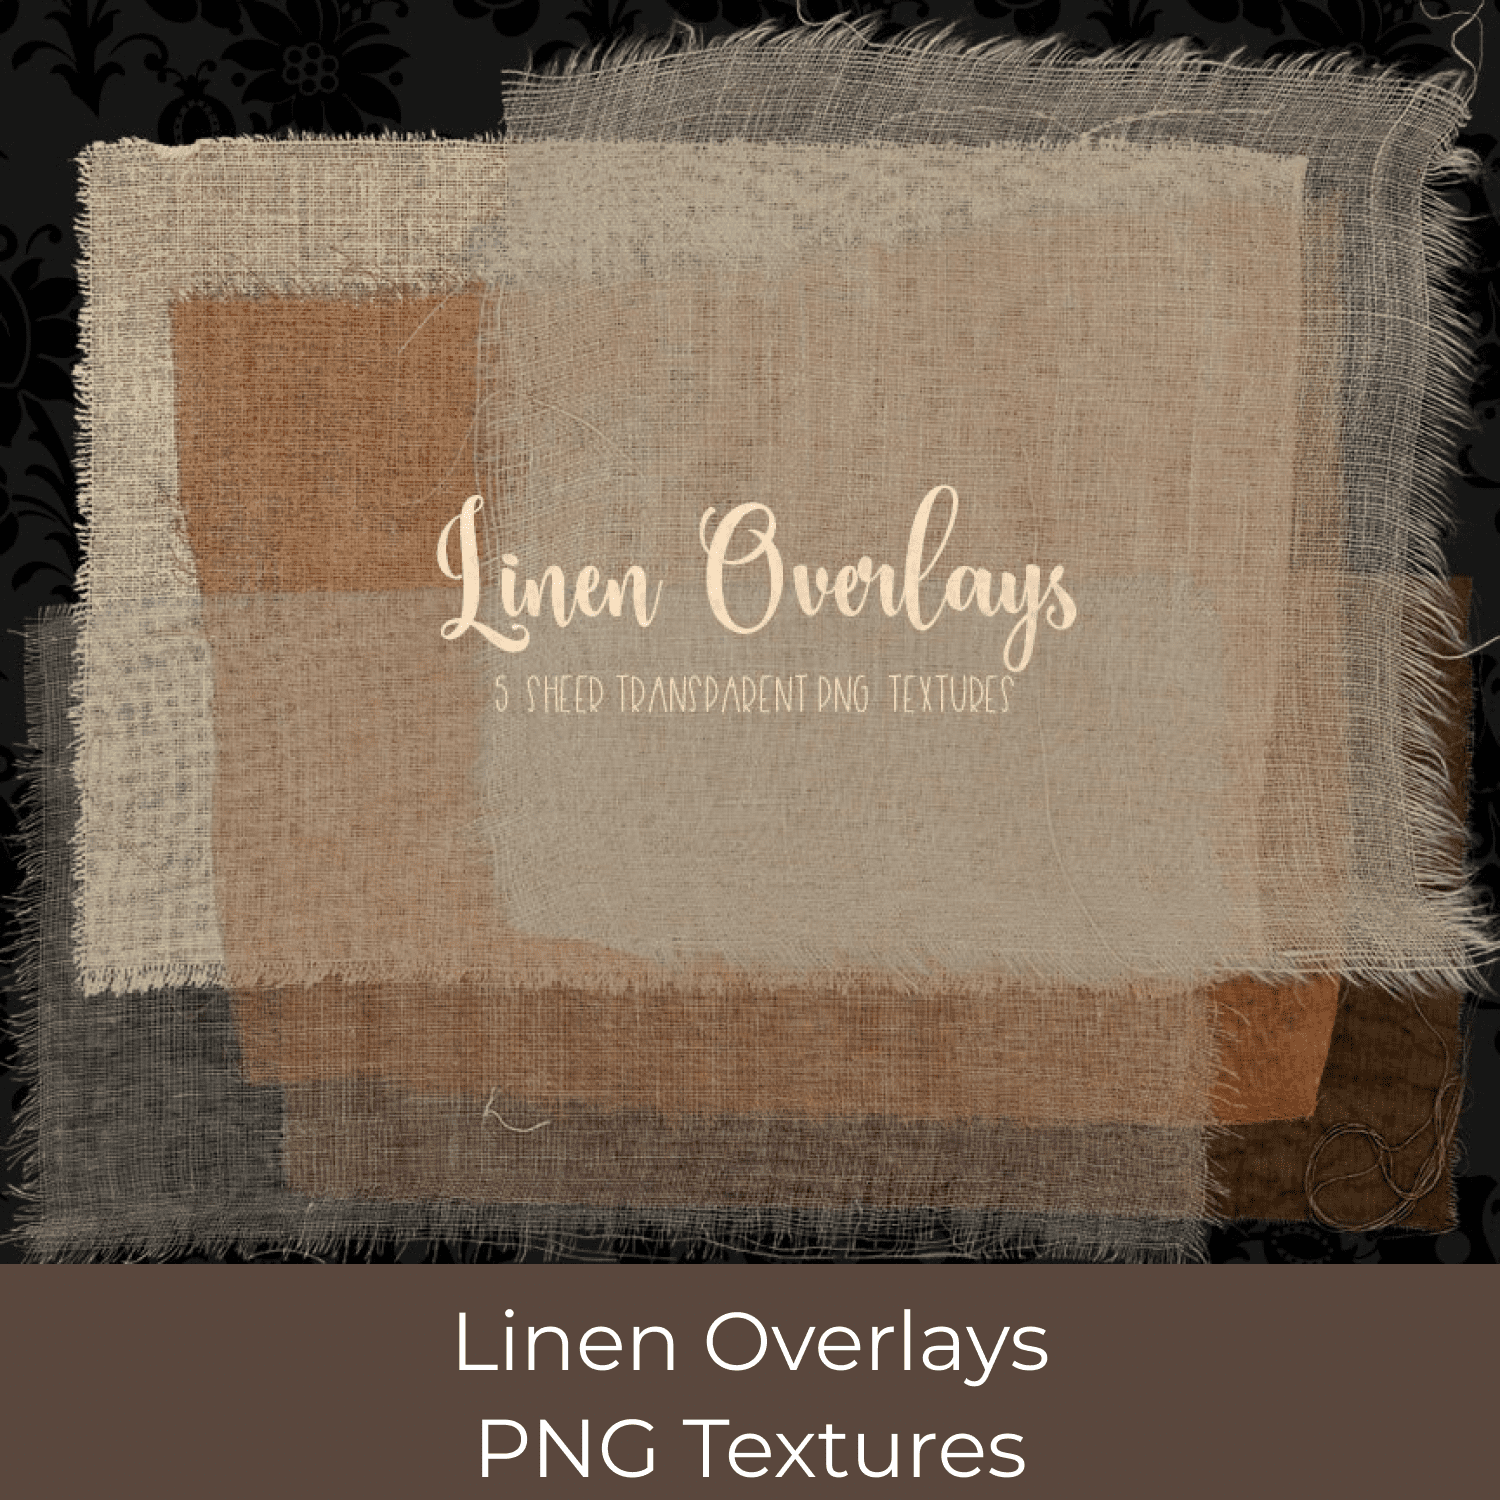 Linen Overlays - PNG Textures.